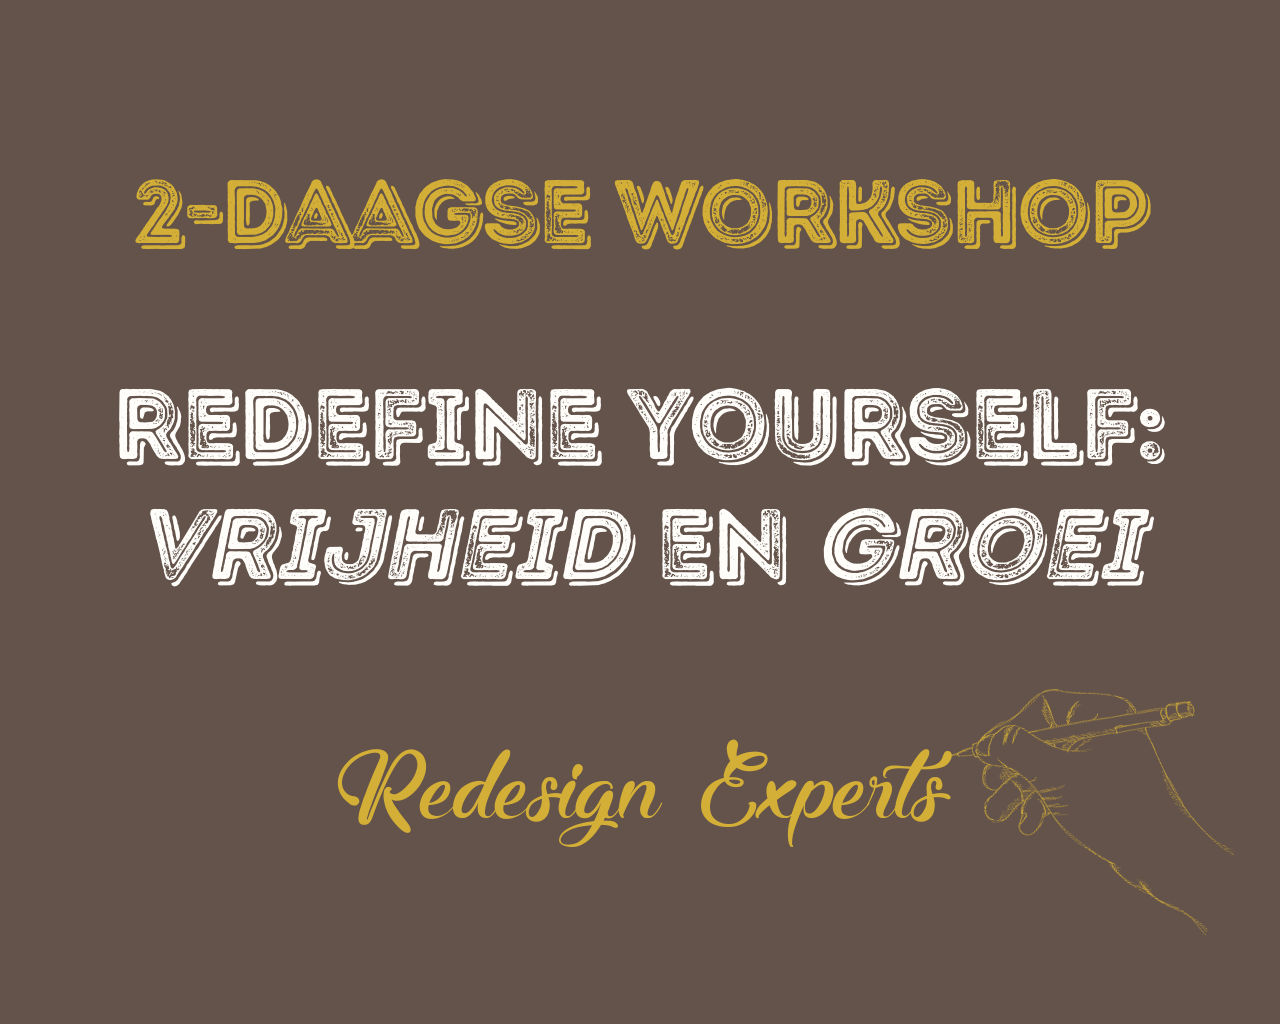 Redefine Yourself, Workshop 1